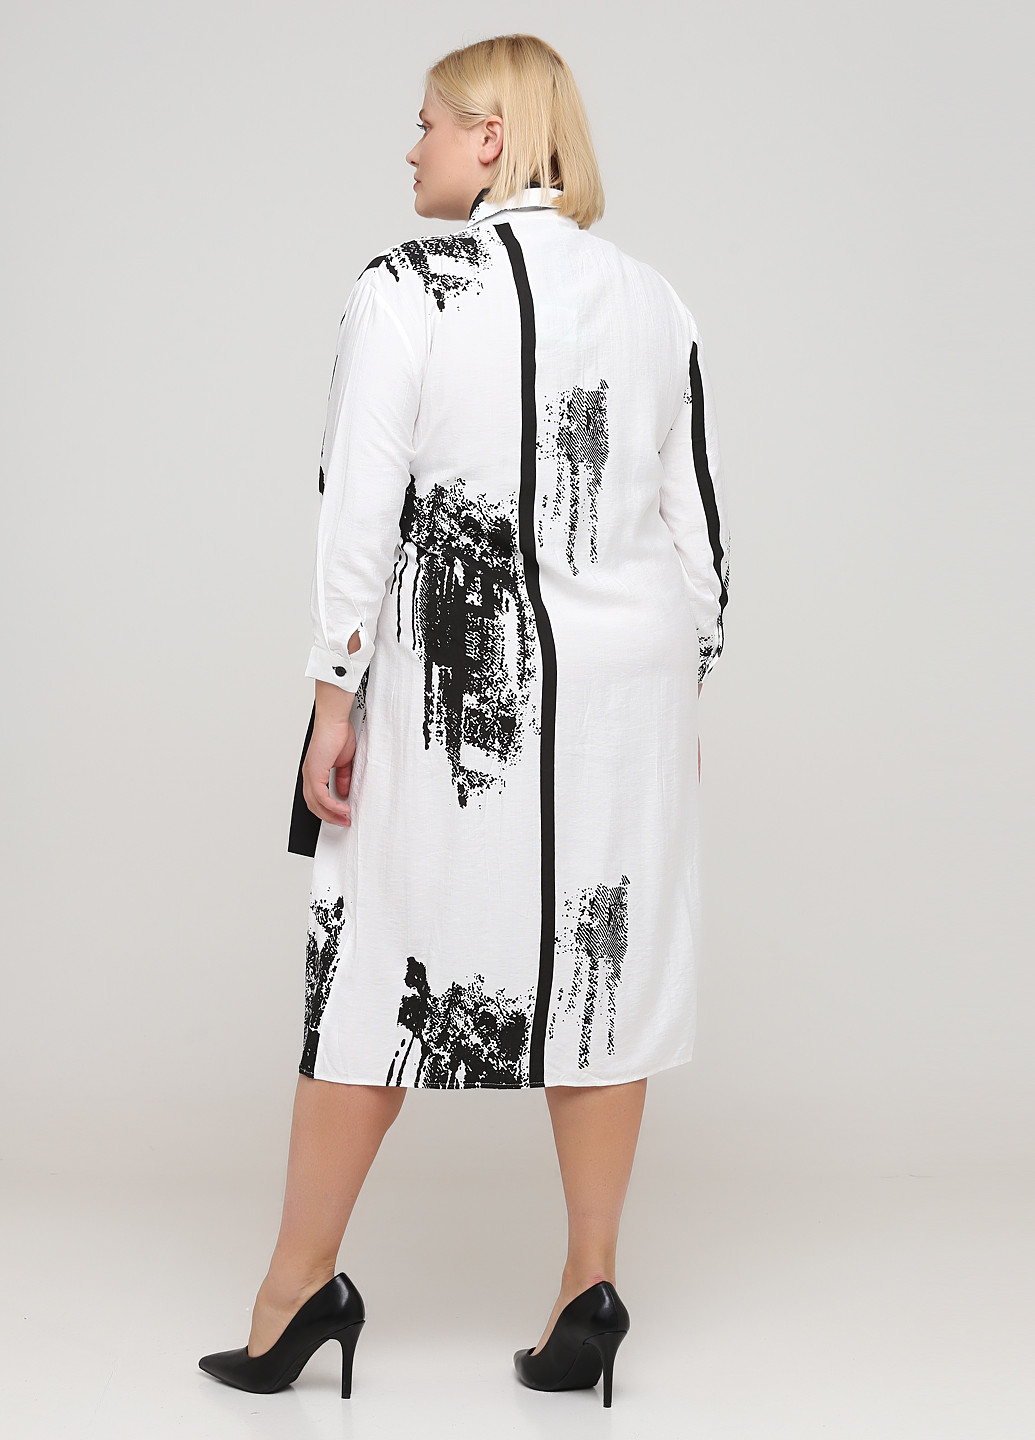 Черно-белое деловое платье рубашка Stella Marina Collezione с абстрактным узором